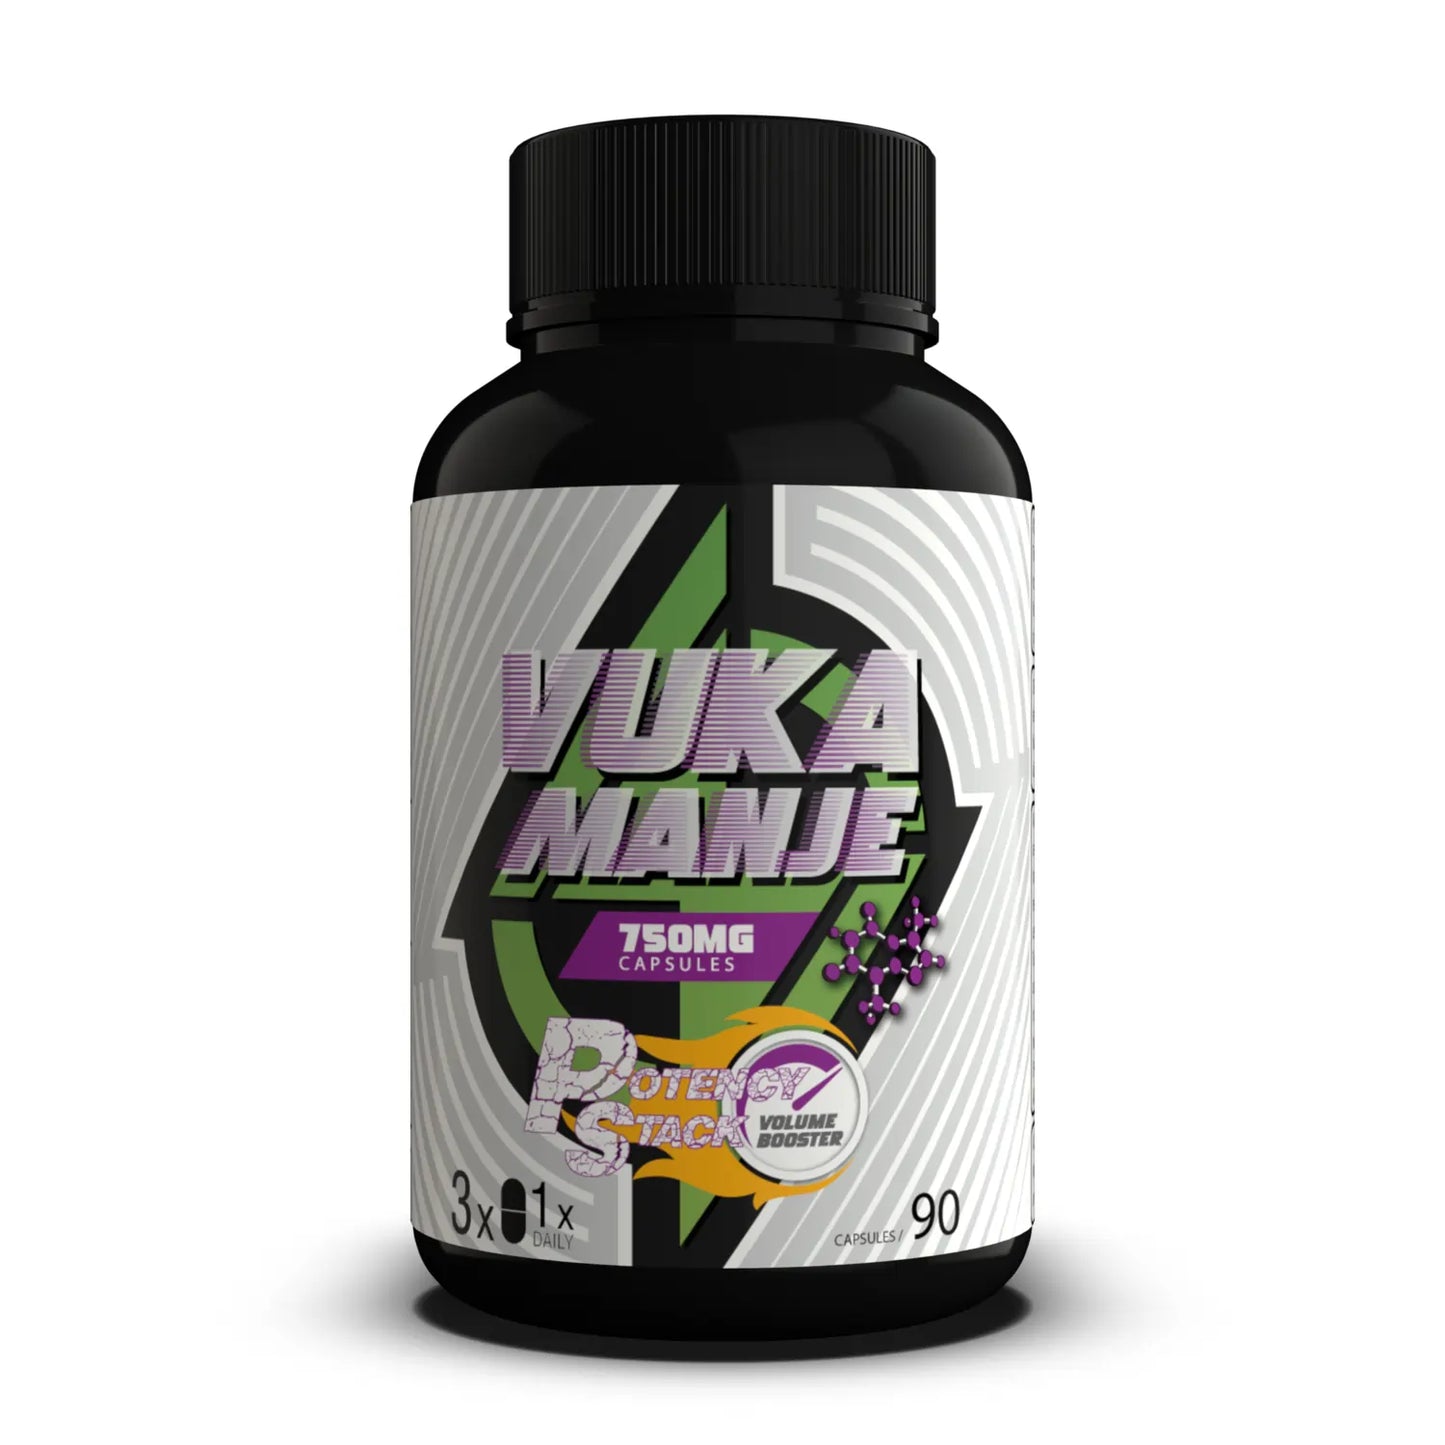 Vuka Manje™ Potency Stack (Volume Booster)